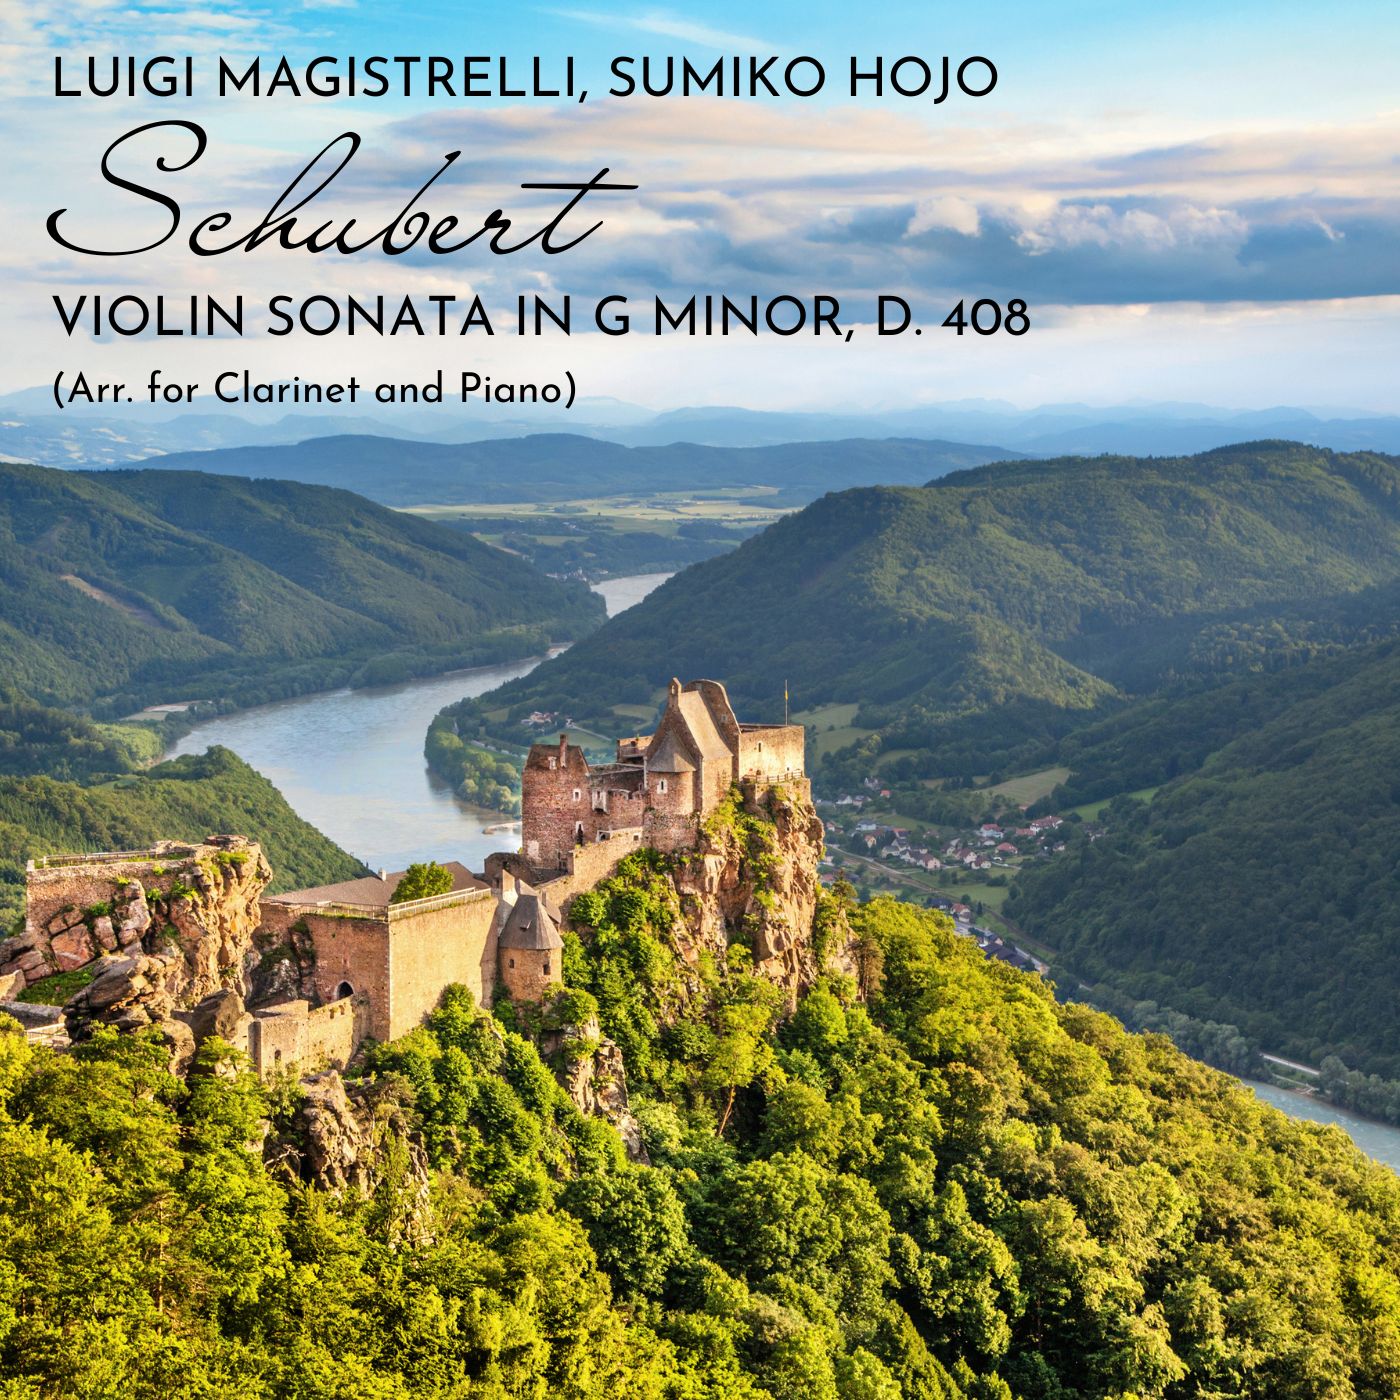 Violin Sonata in G minor, D. 408